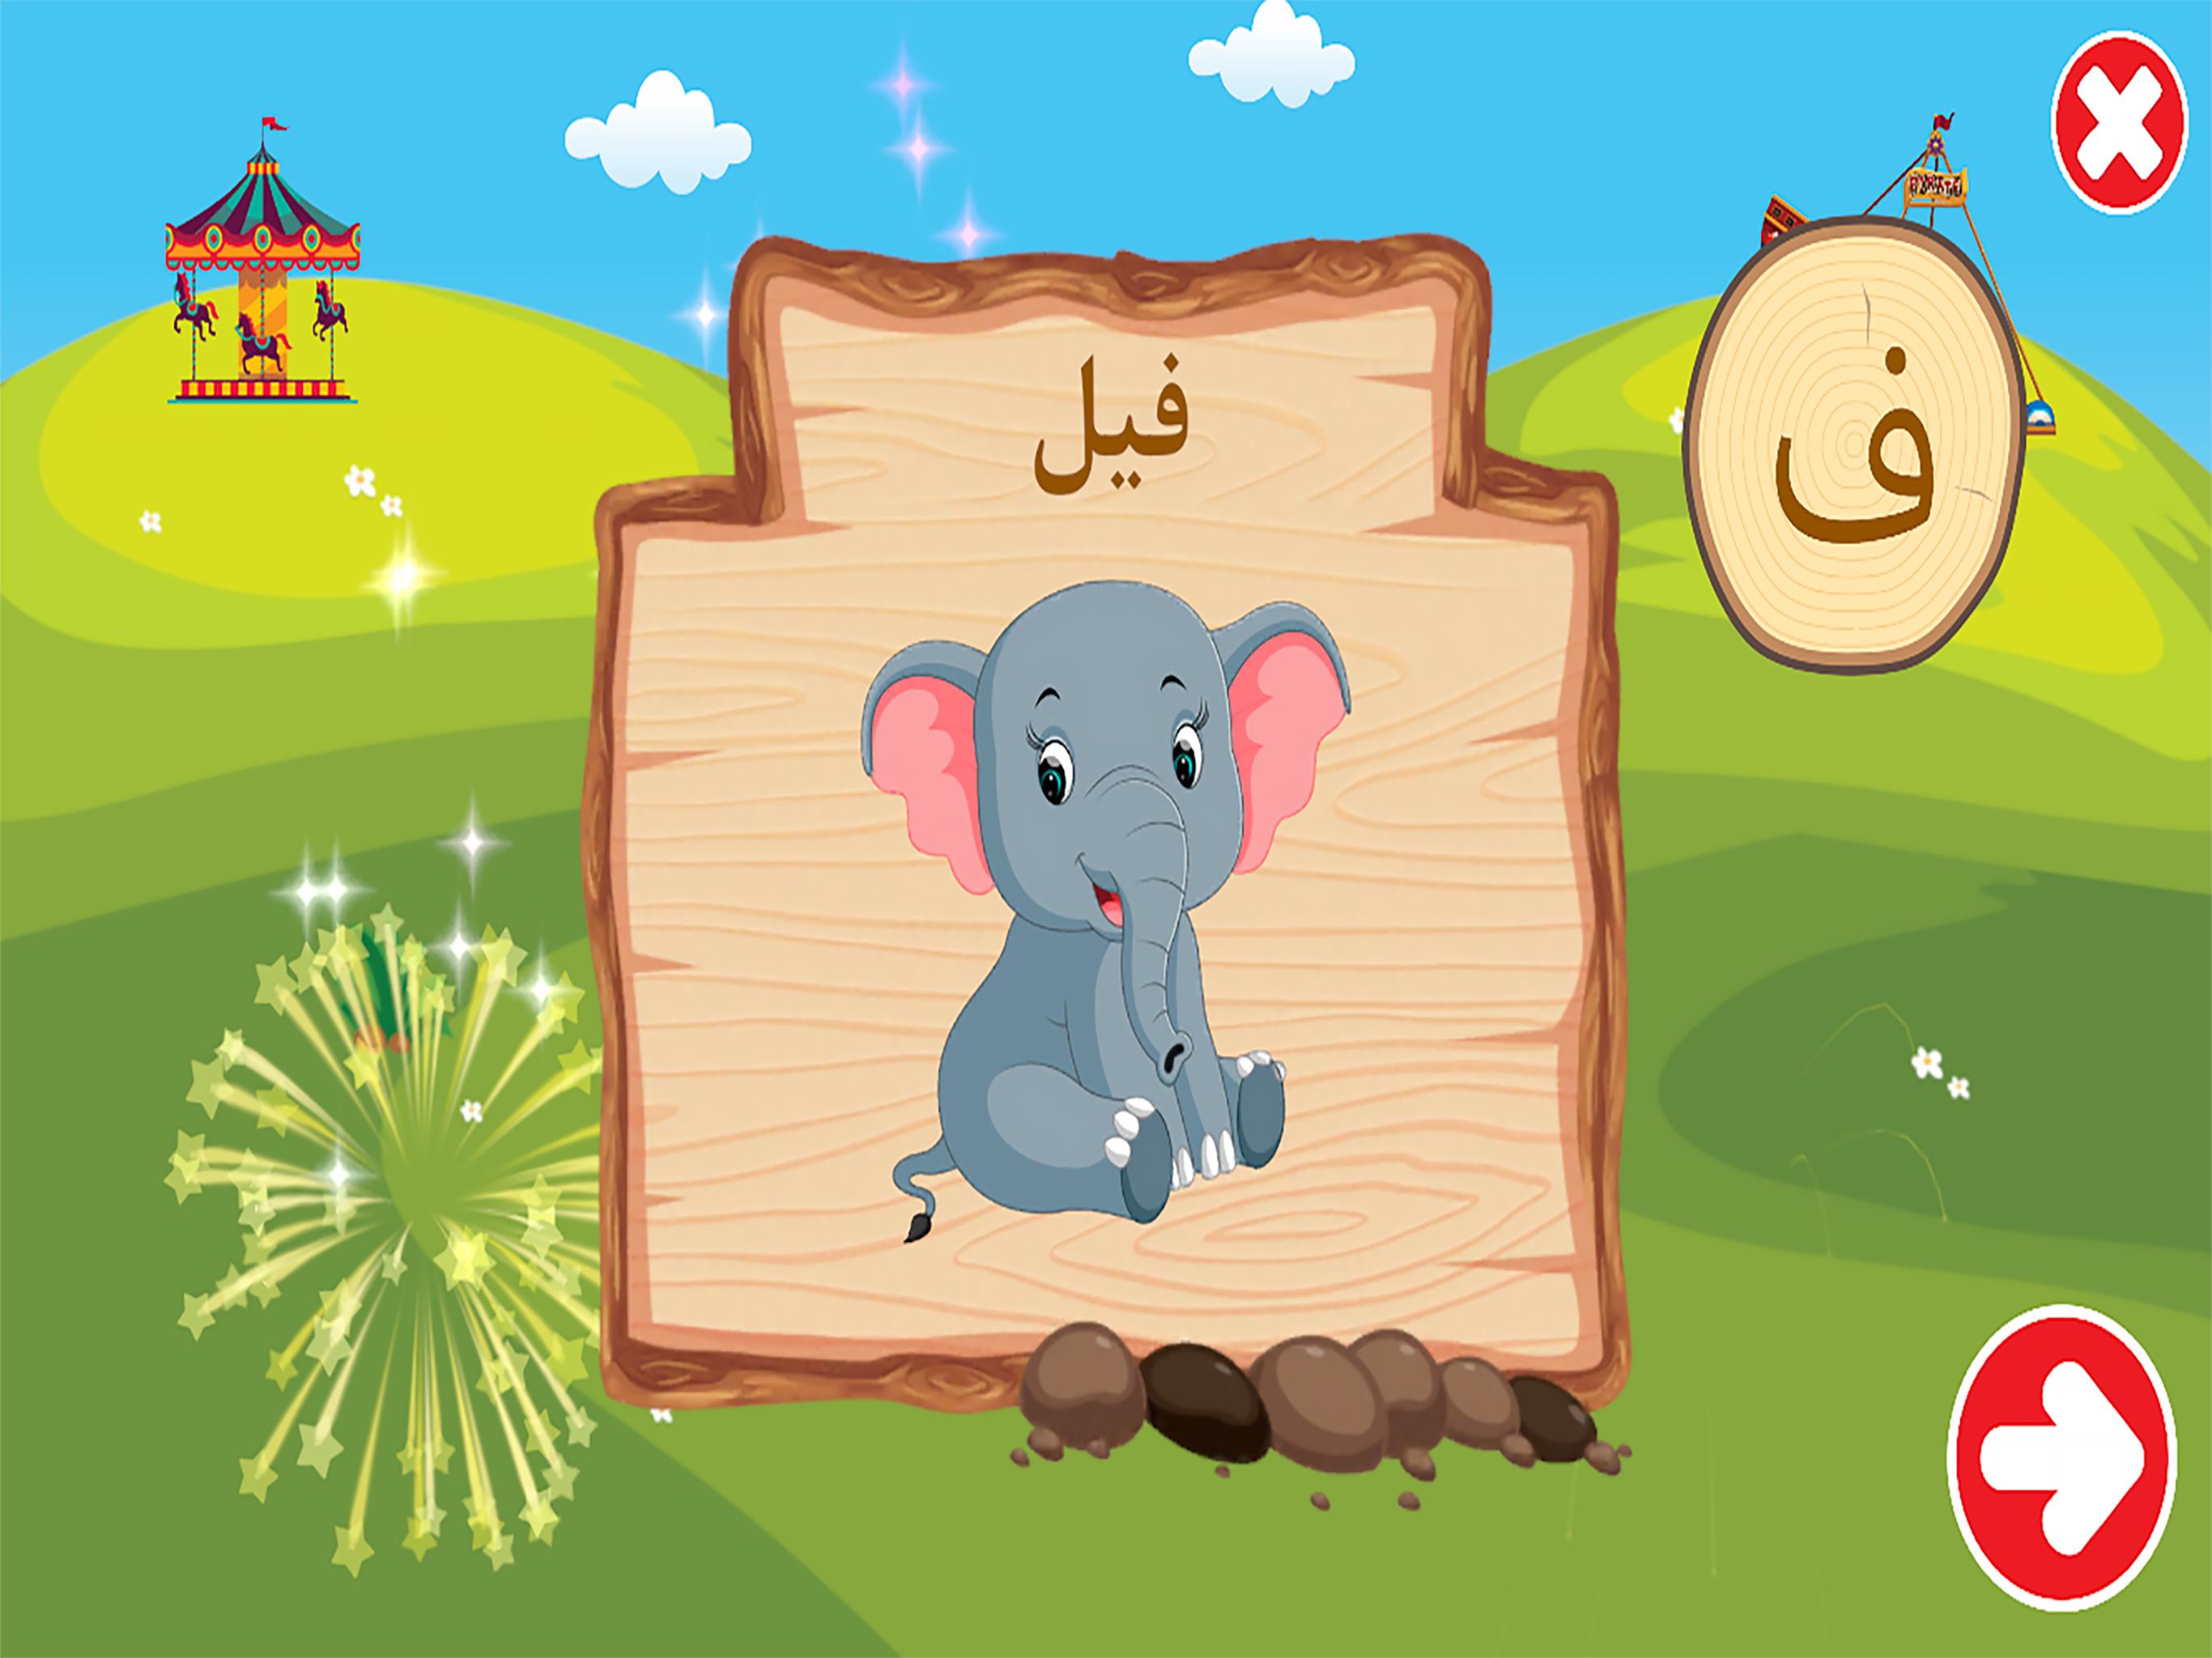 الفبای فارسی کودکان (Farsi alphabet game) 1.11.2 Screenshot 16